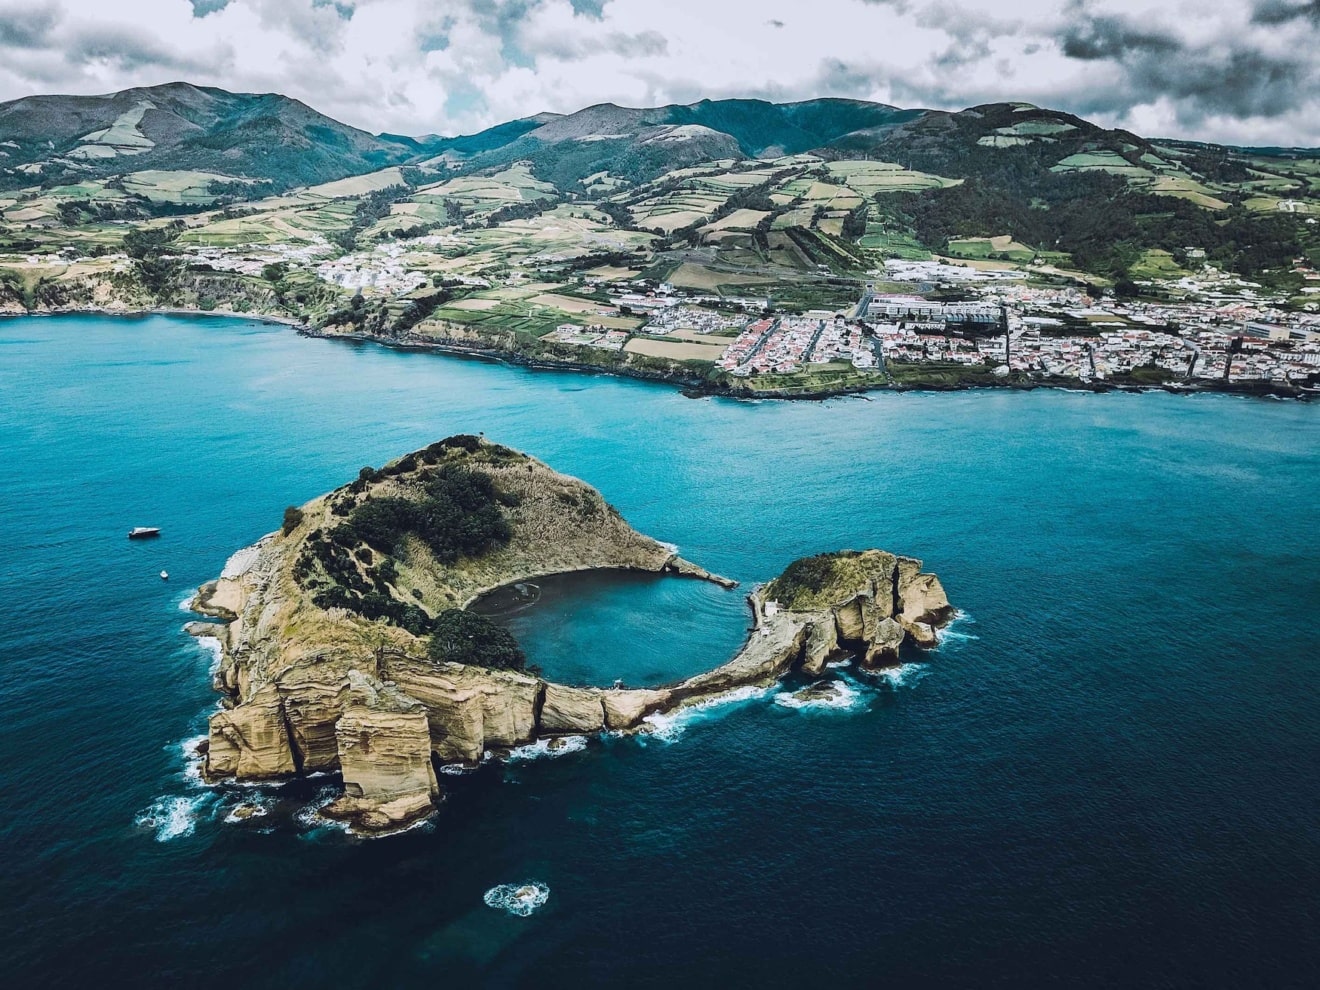 Inselarchipel der Azoren aus der Vogelperspektive